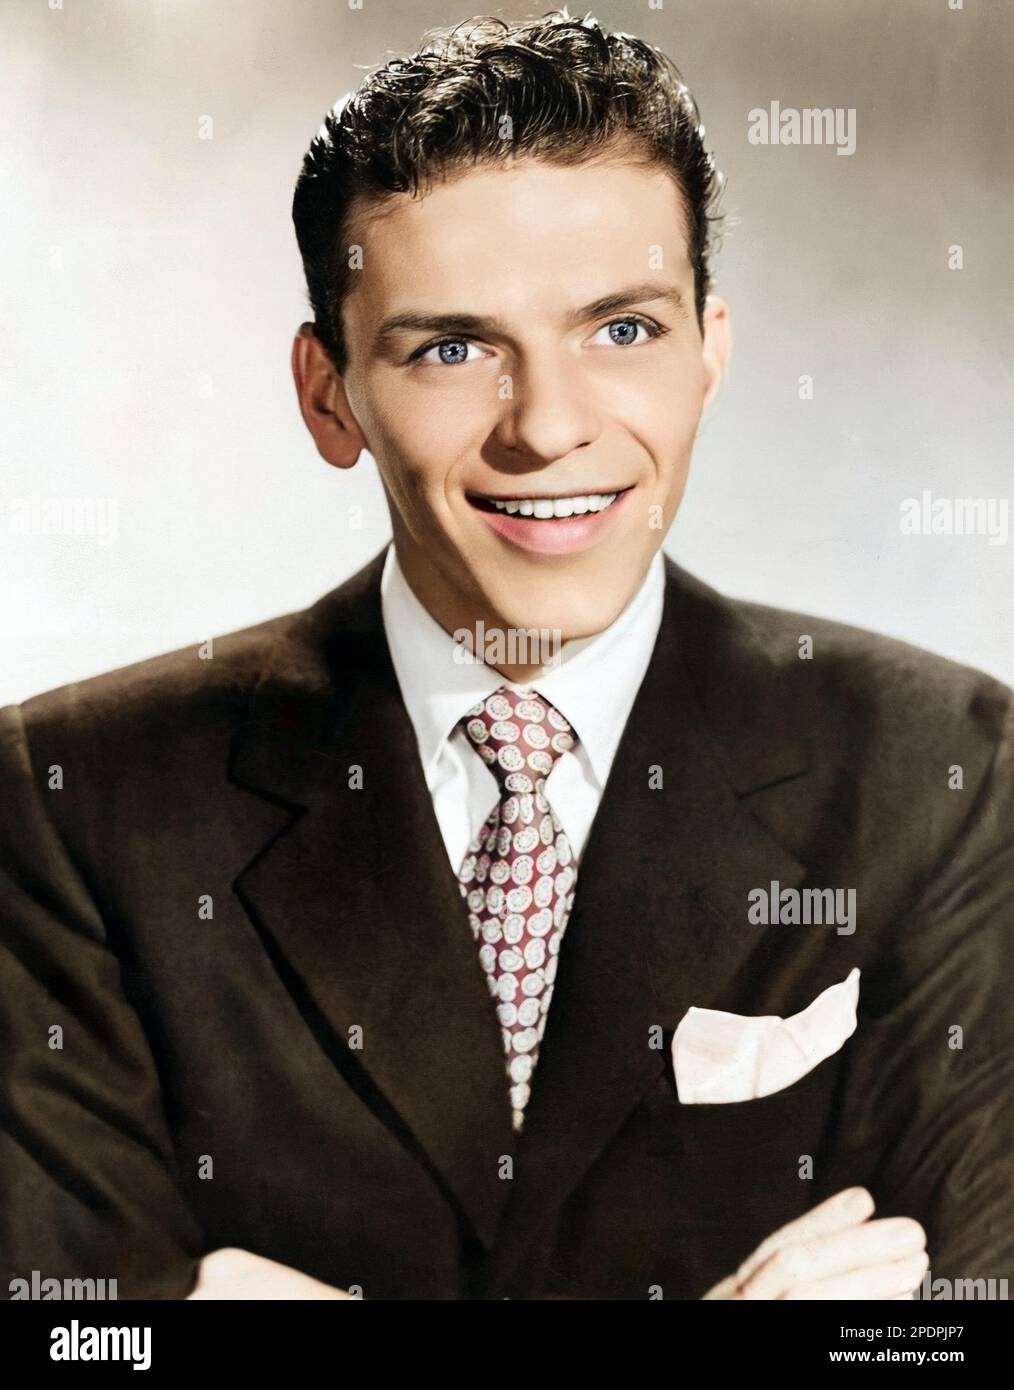 Frank Sinatra - photo colorisée, vers 1944 Banque D'Images